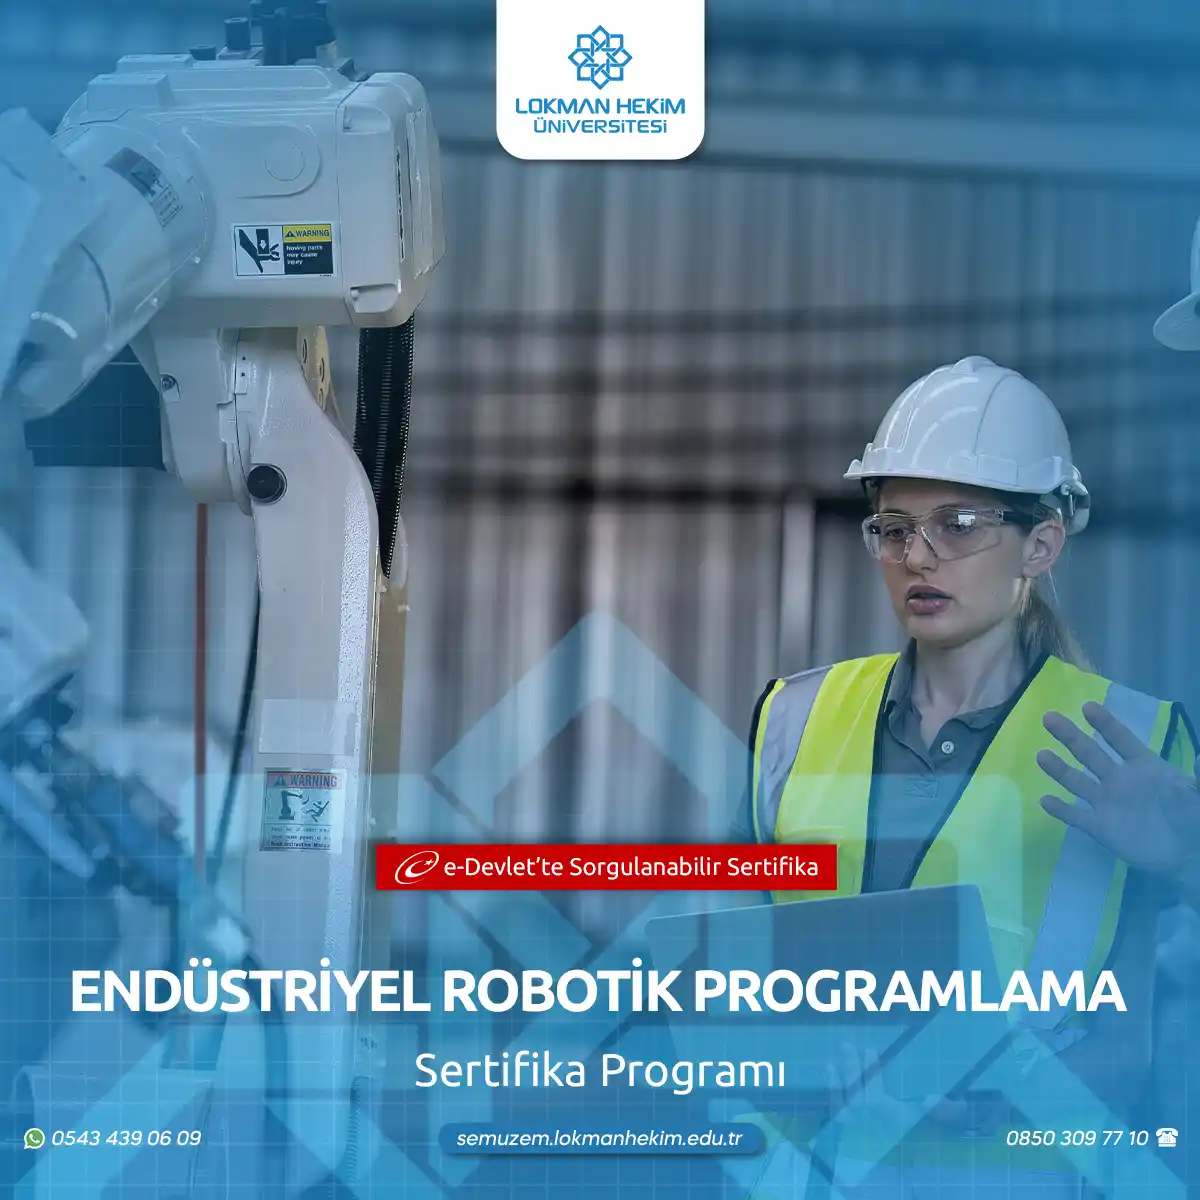 Endüstriyel Robotik Programlama Eğitimi